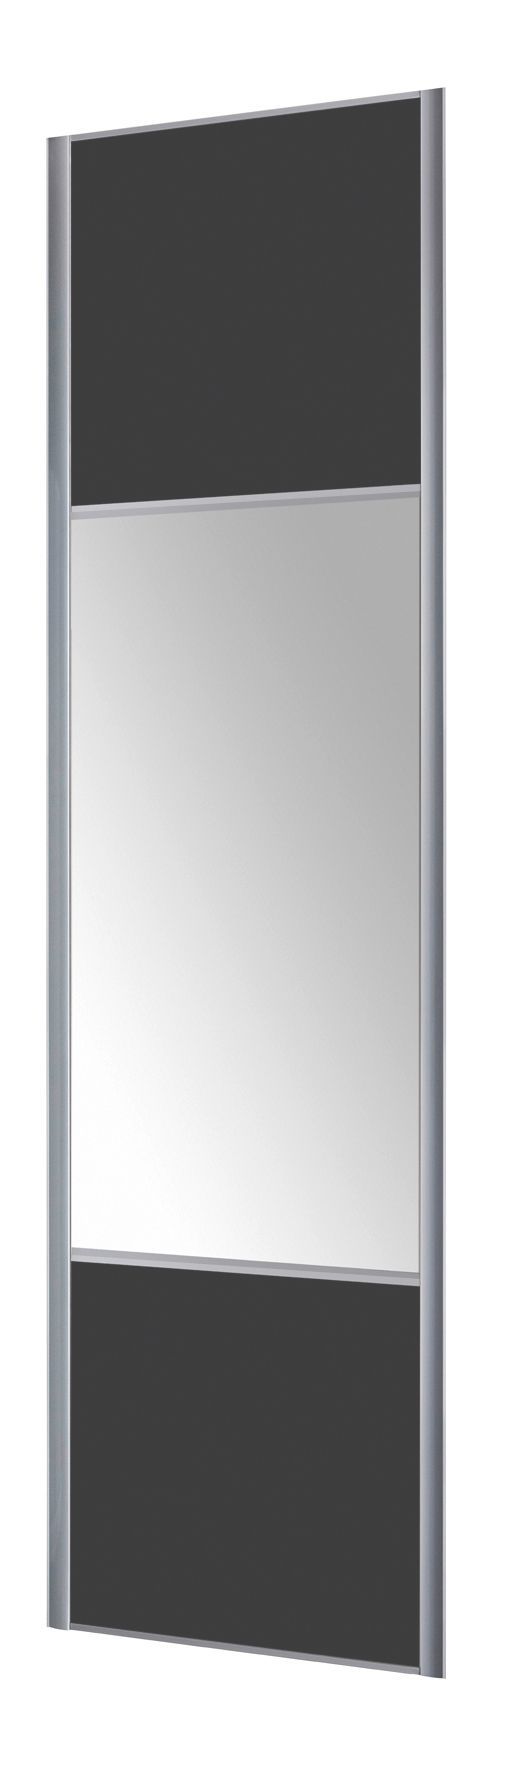 Form Valla Panelled Dark grey Mirrored Sliding wardrobe door (H) 2260mm x (W) 772mm